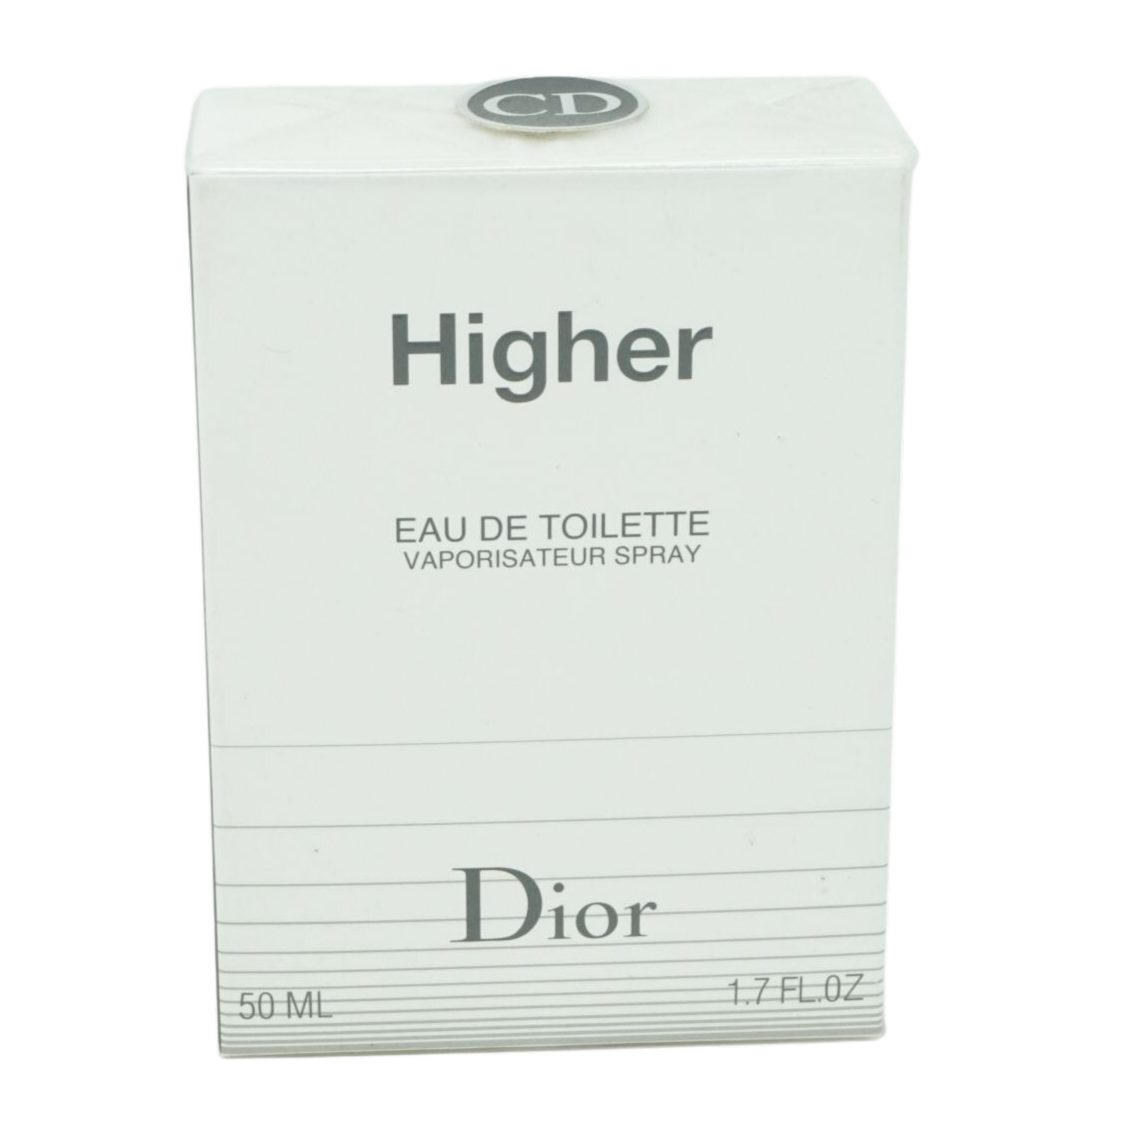 Toilette de 50ml Spray de Dior Higher Eau Dior Eau Toilette